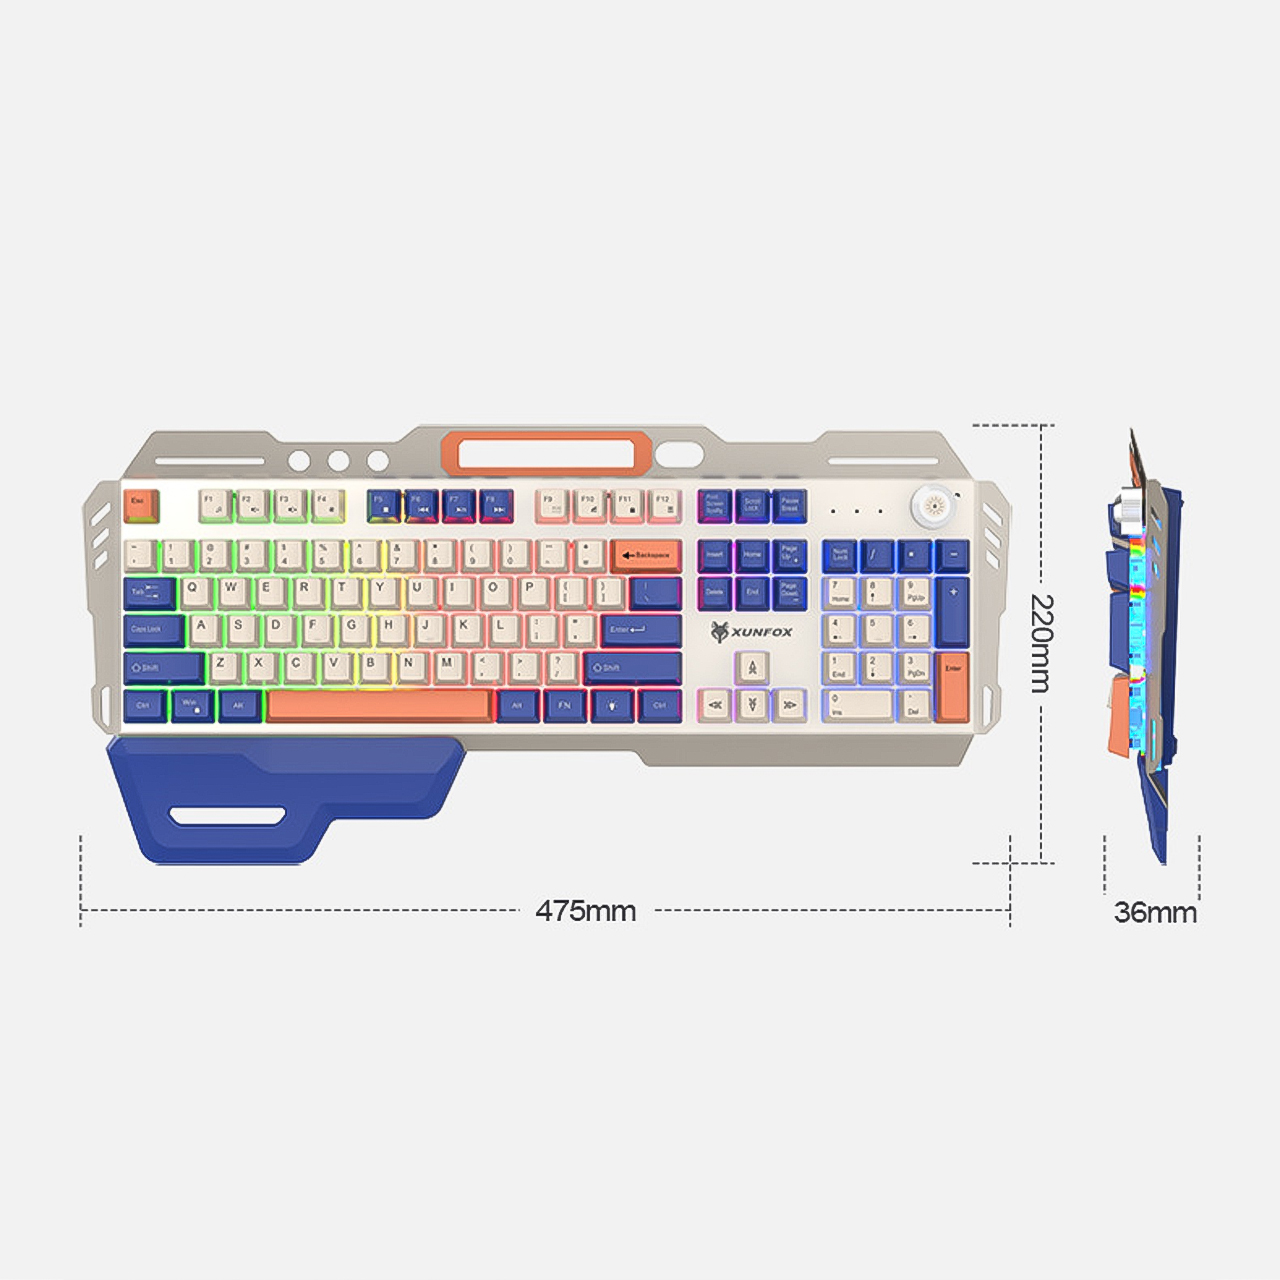 Bàn phím giả cơ chuyên game Vinetteam XOUNFOX K90 thiết kế viền kim loại 104 phím led 7 màu siêu đẹp có nút chỉnh âm lượng dành cho chơi game, văn phòng tặng kèm kê tay- hàng chính hãng